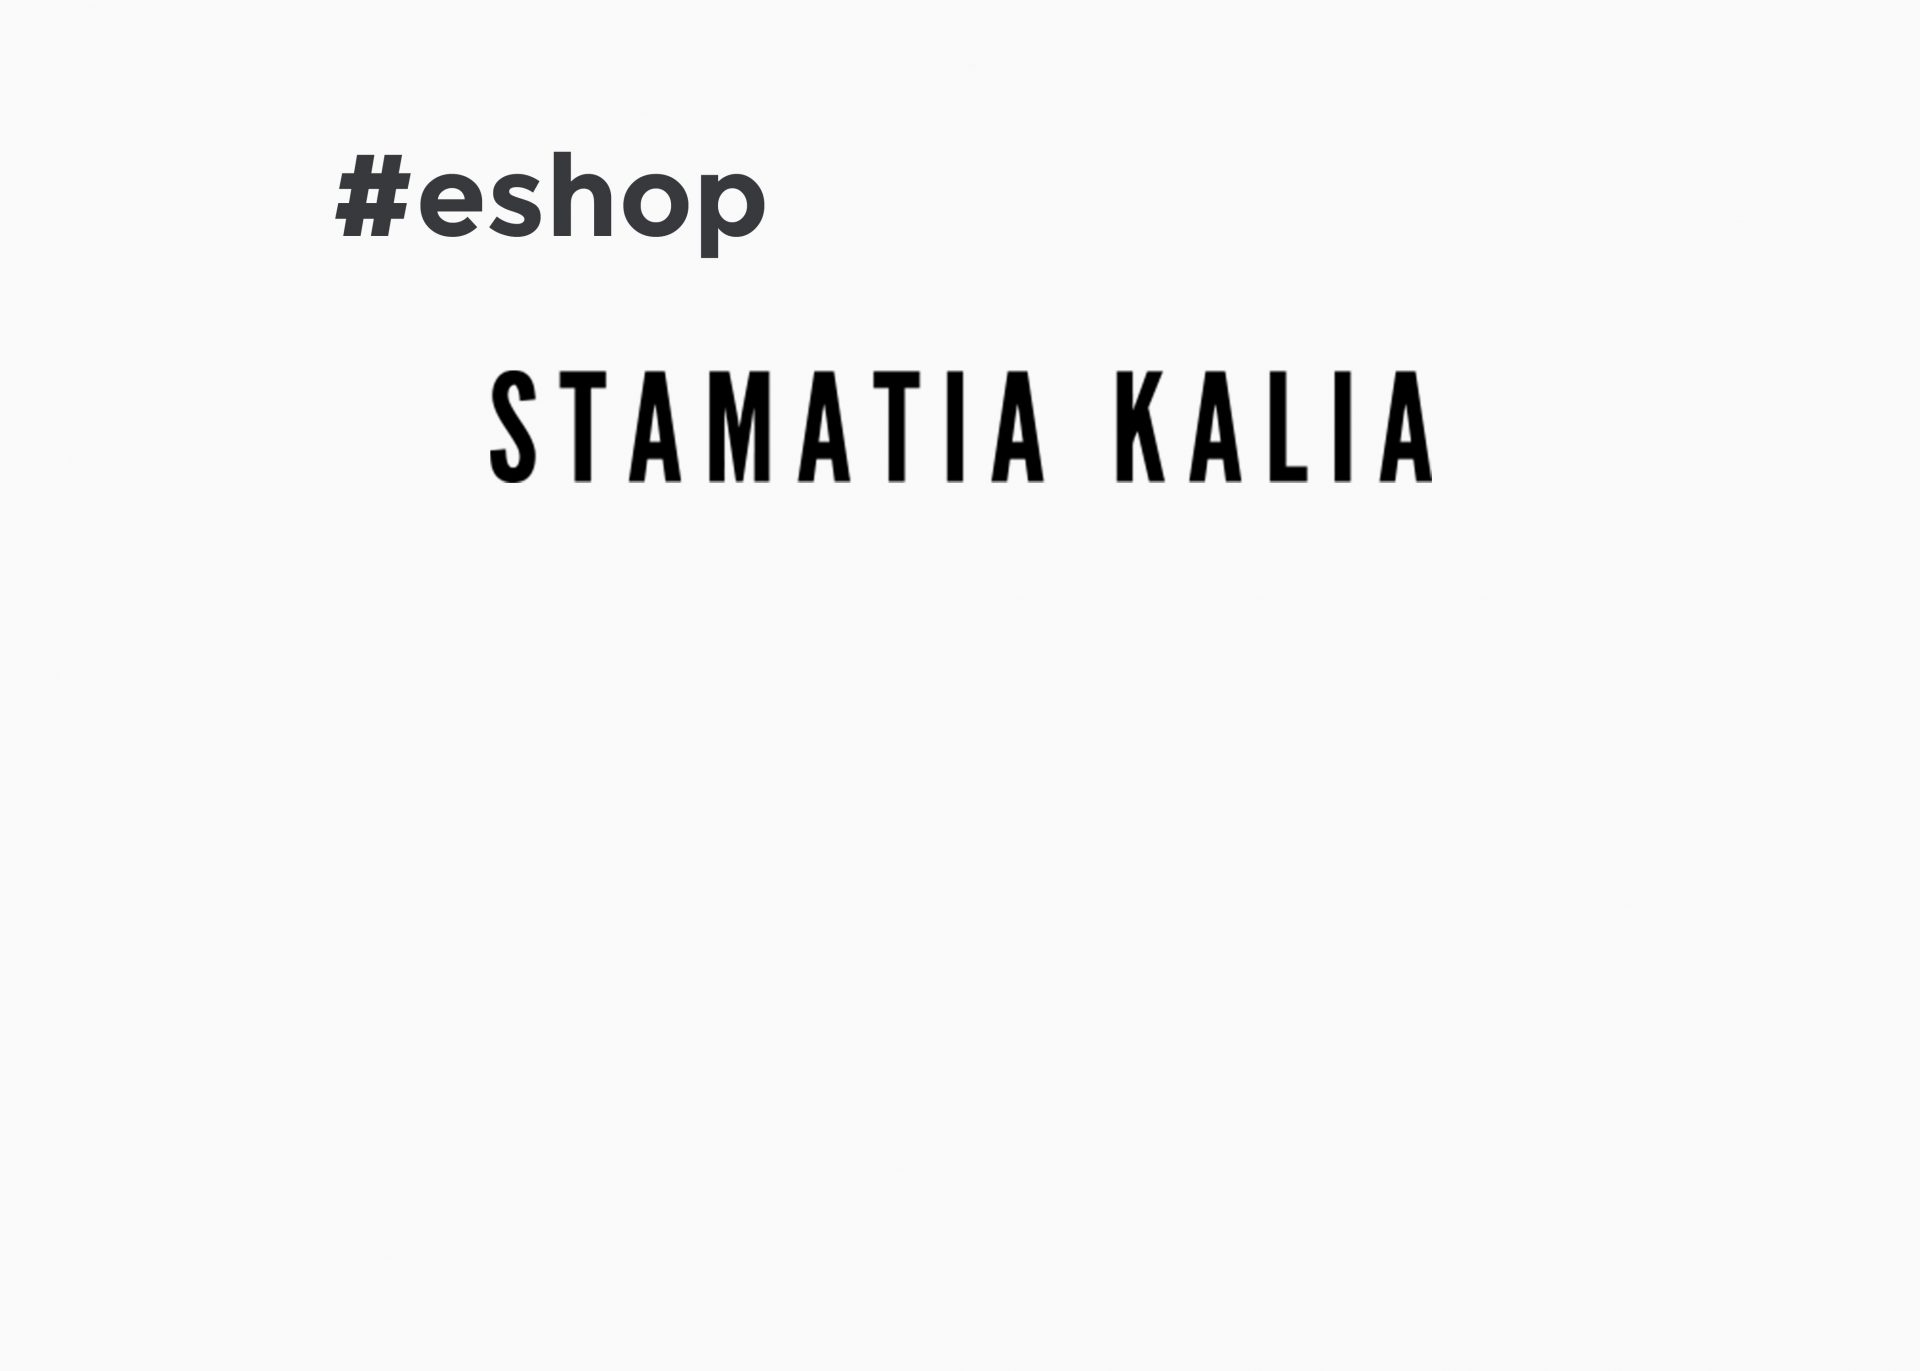 Eshop – stamatiakalia.com